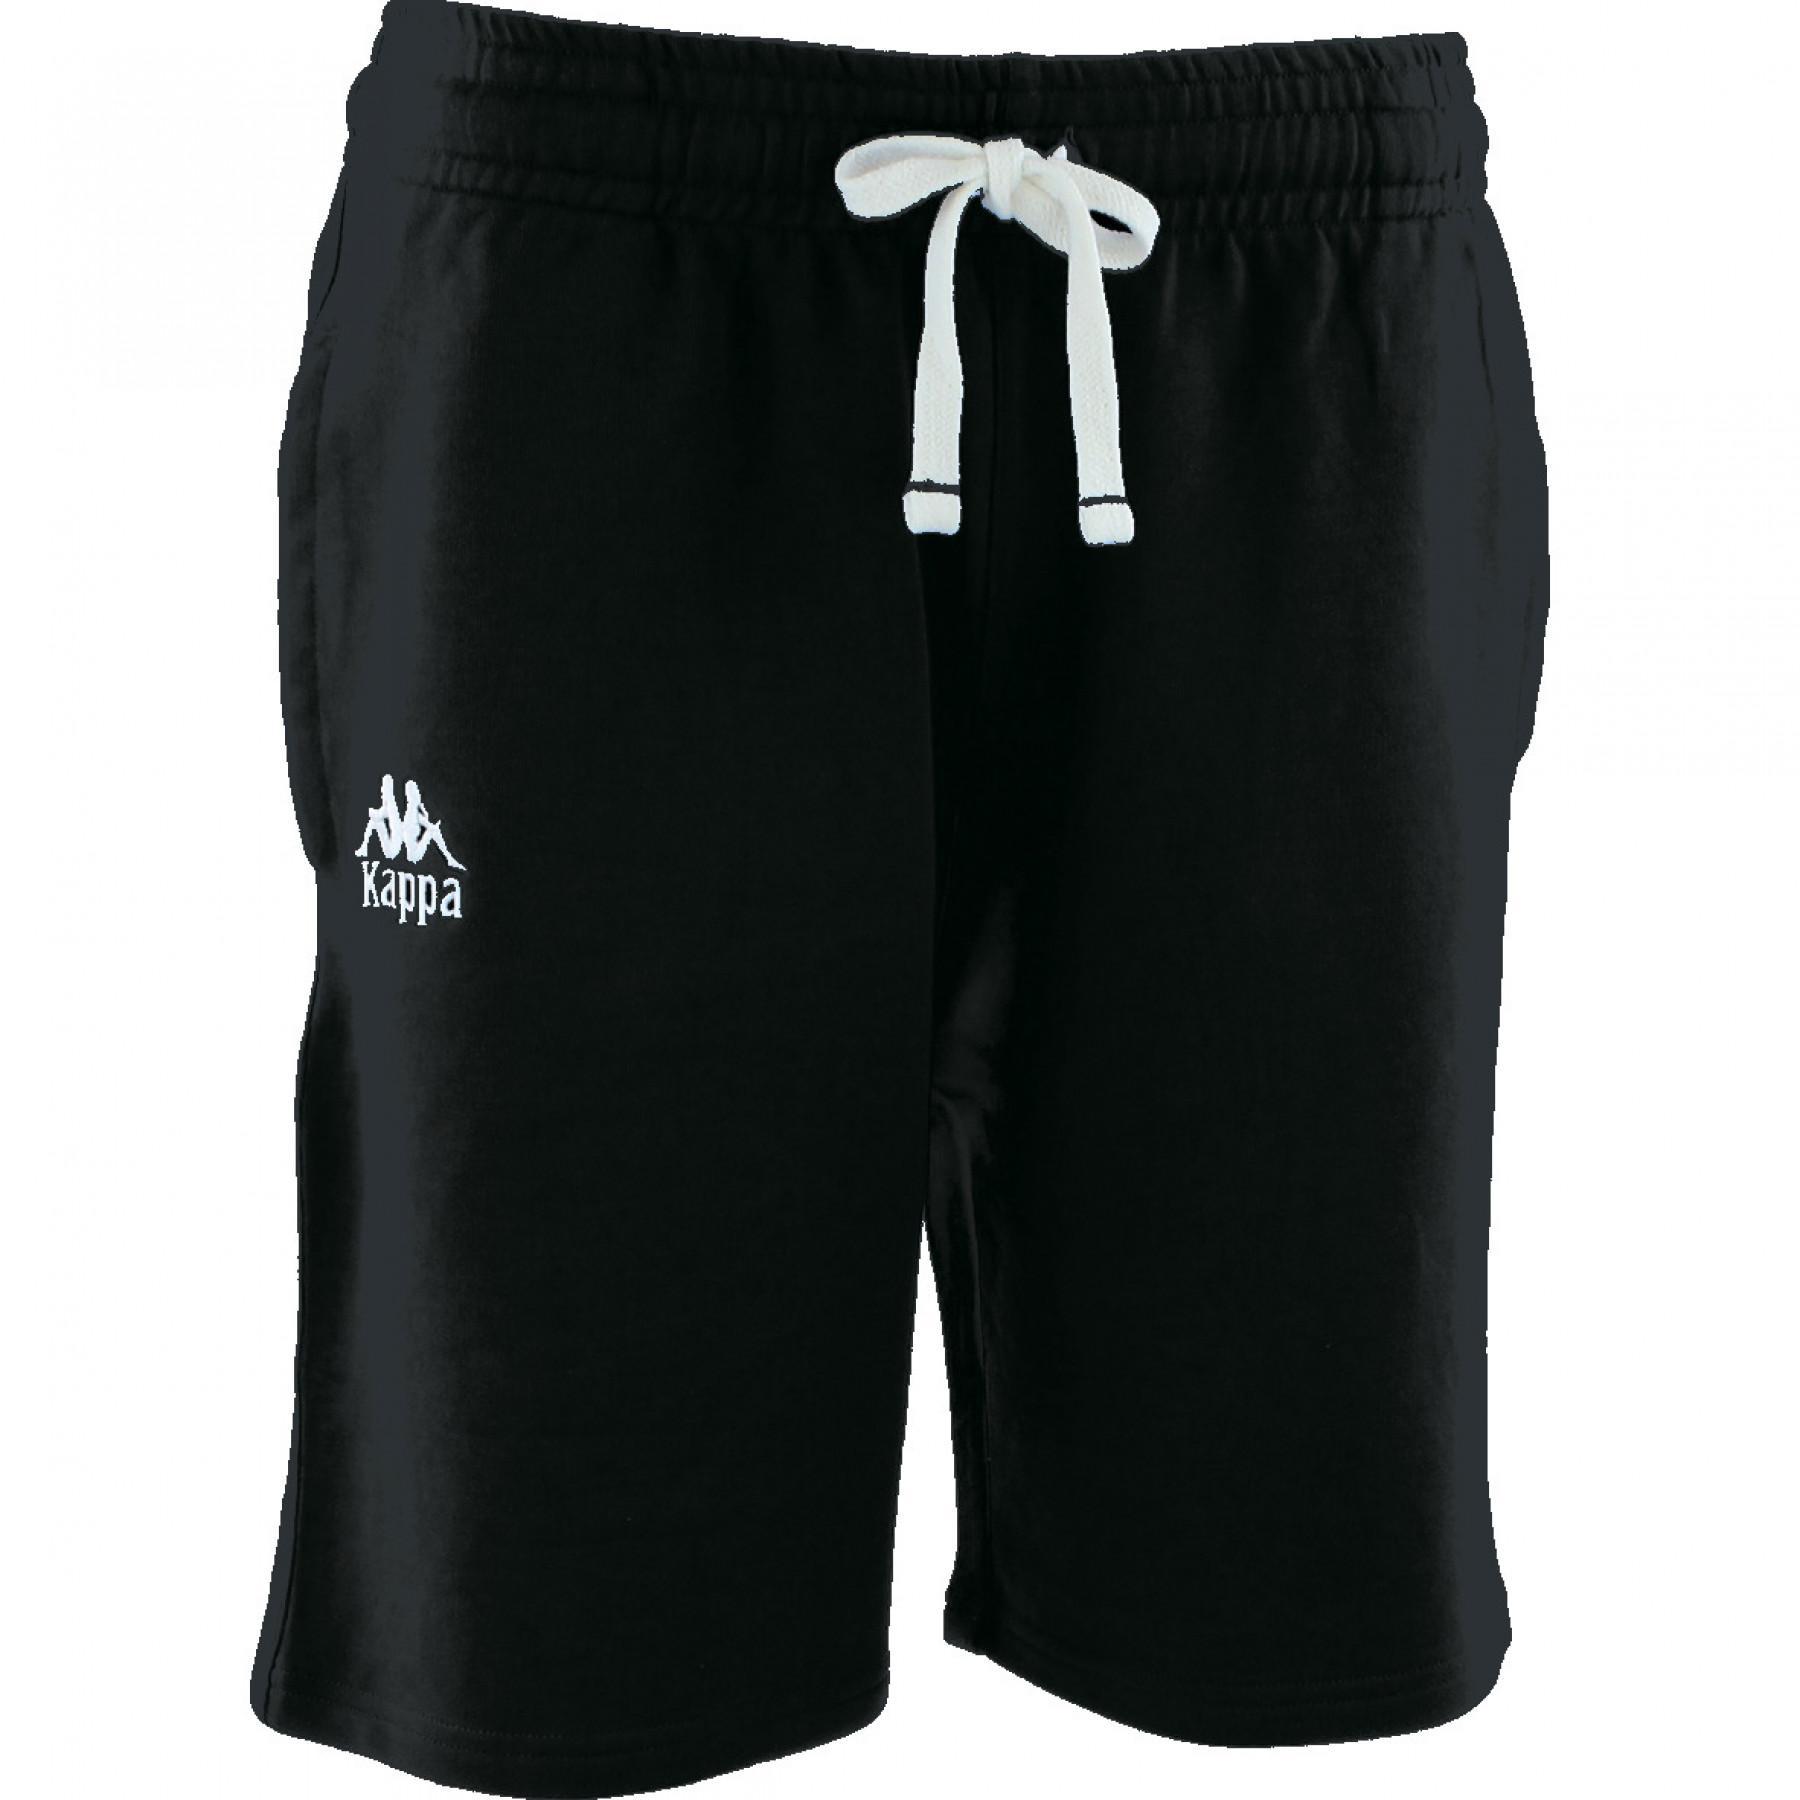 Bermuda shorts for children Kappa Bastina